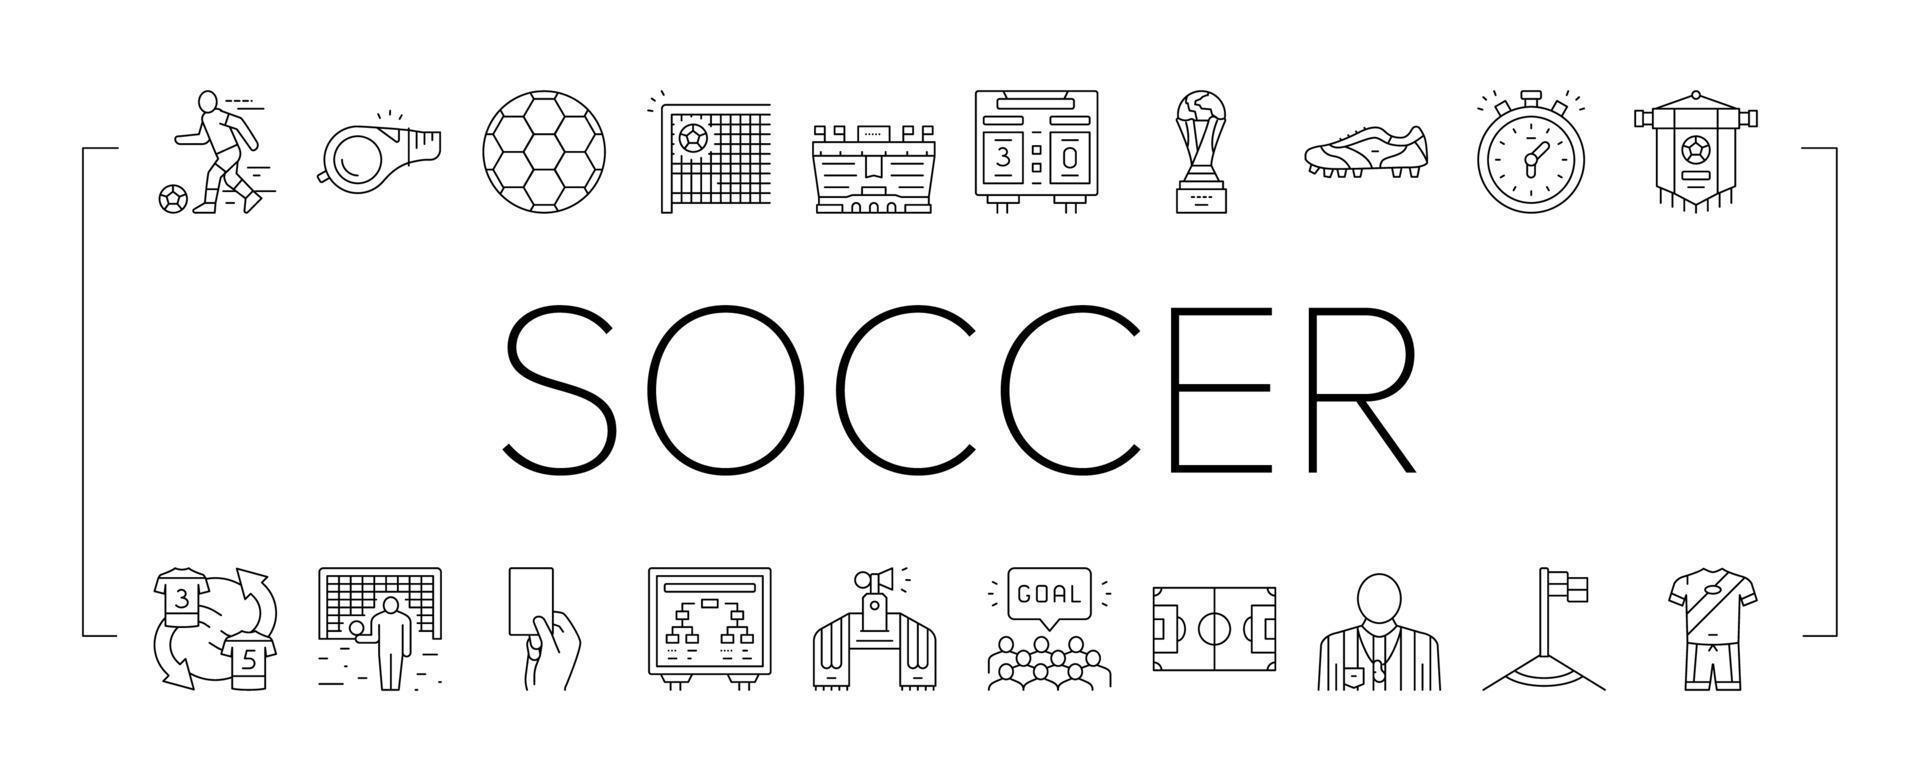 juego de deporte de equipo de fútbol en los iconos del estadio establecer vector